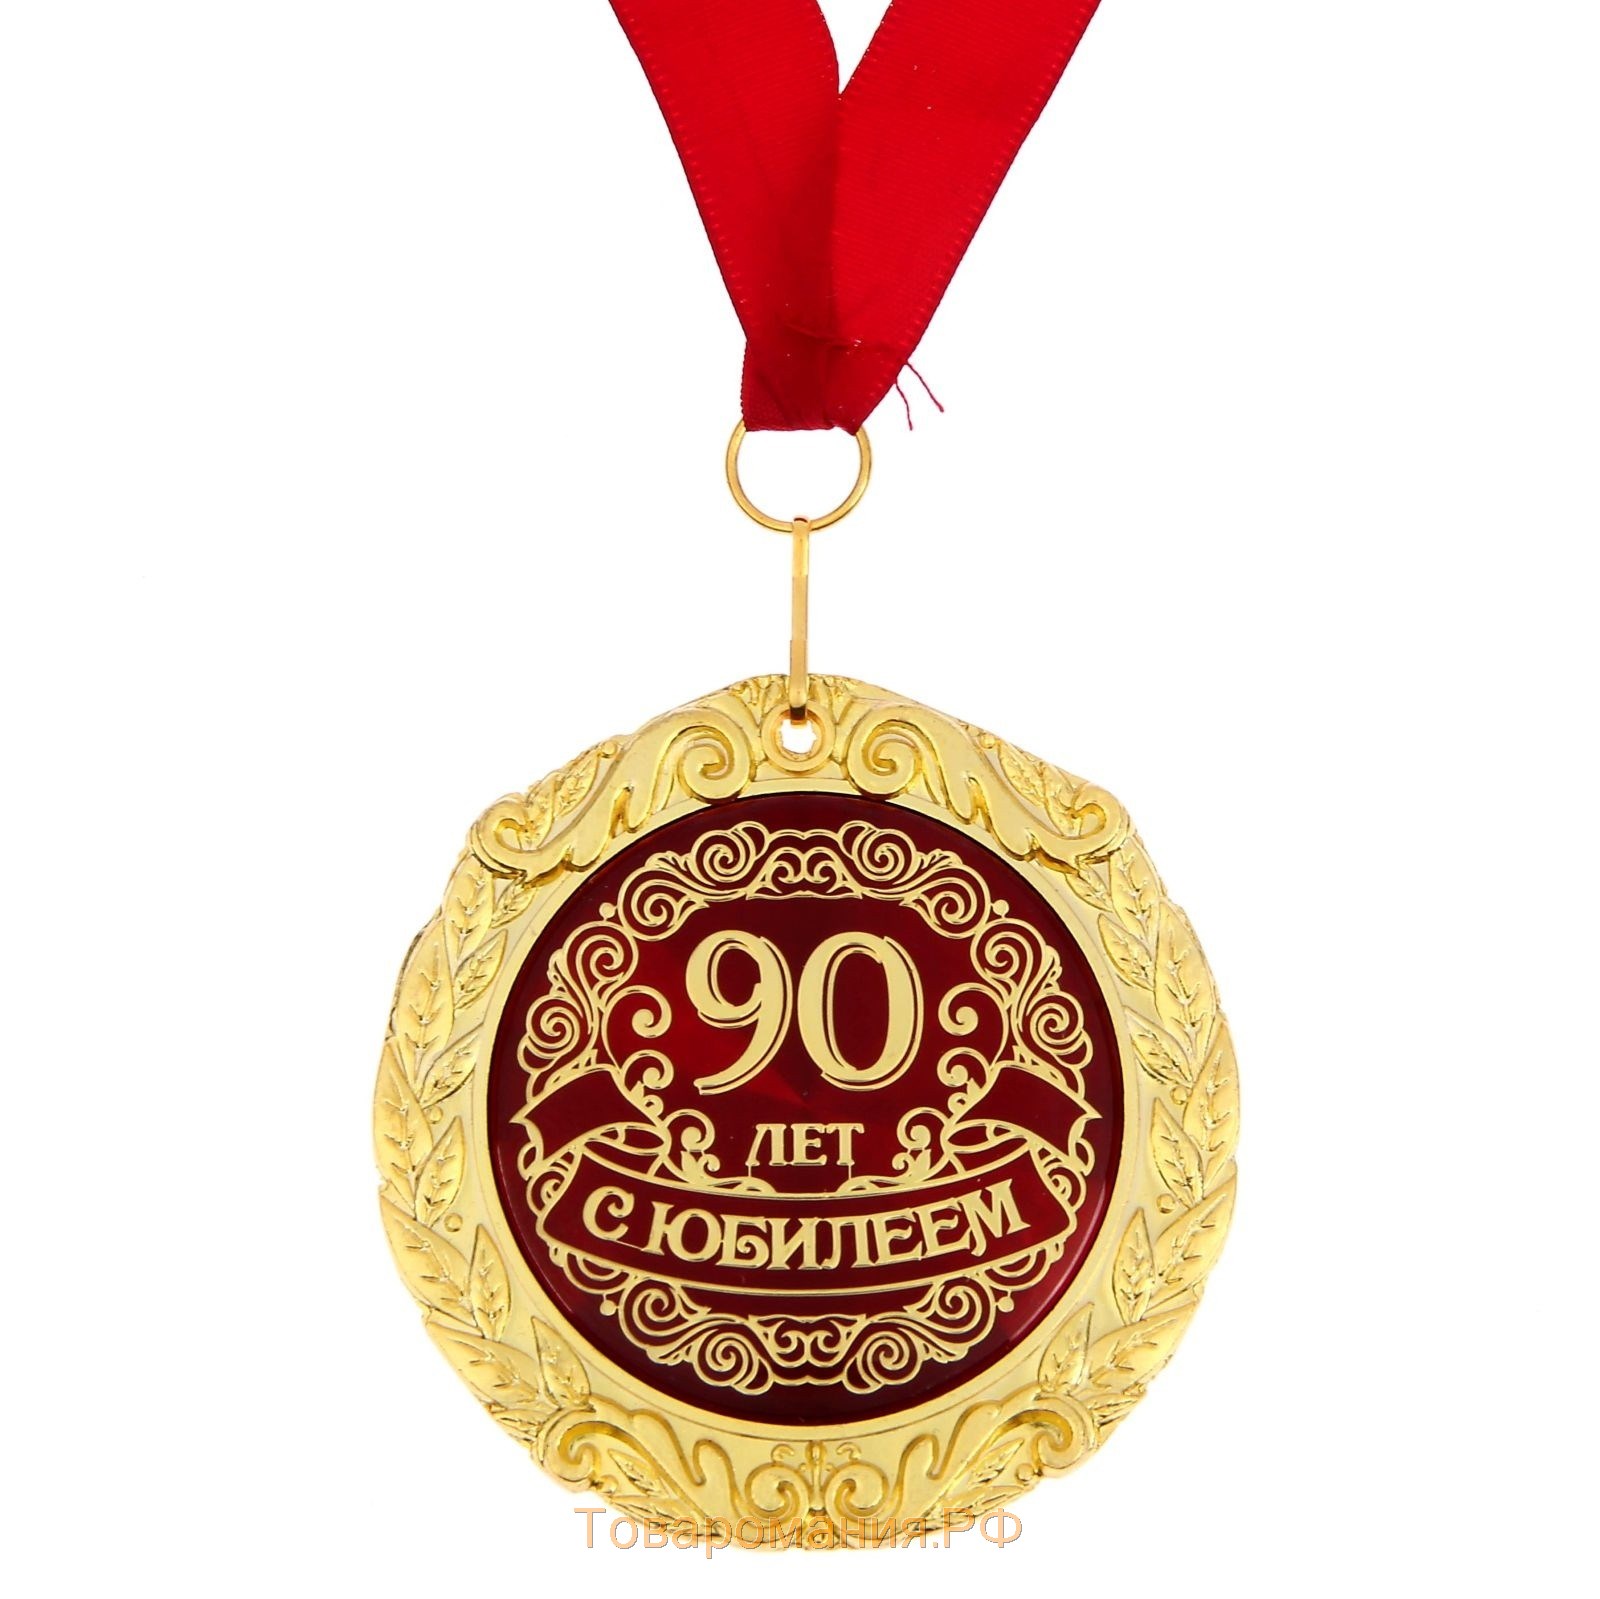 Поздравления с днем 90 летием. Медаль с юбилеем. С юбилеем 90 лет. Медаль 90 лет. Медаль с юбилеем 90.